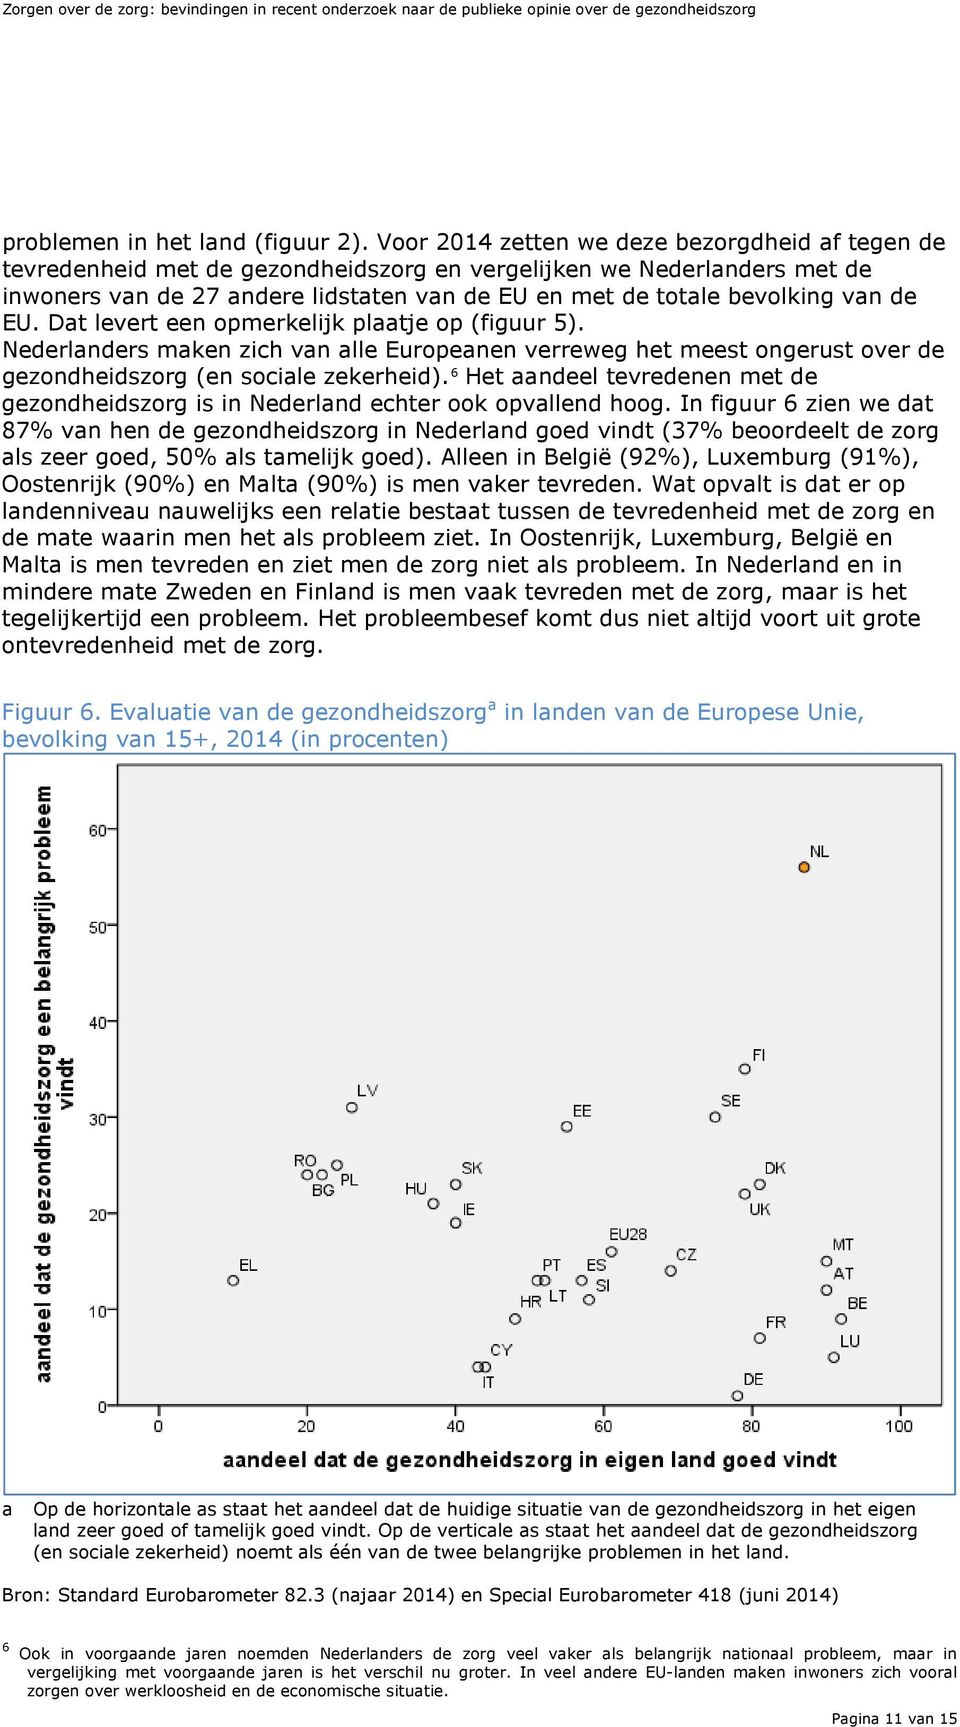 de EU. Dat levert een opmerkelijk plaatje op (figuur 5). Nederlanders maken zich van alle Europeanen verreweg het meest ongerust over de gezondheidszorg (en sociale zekerheid).